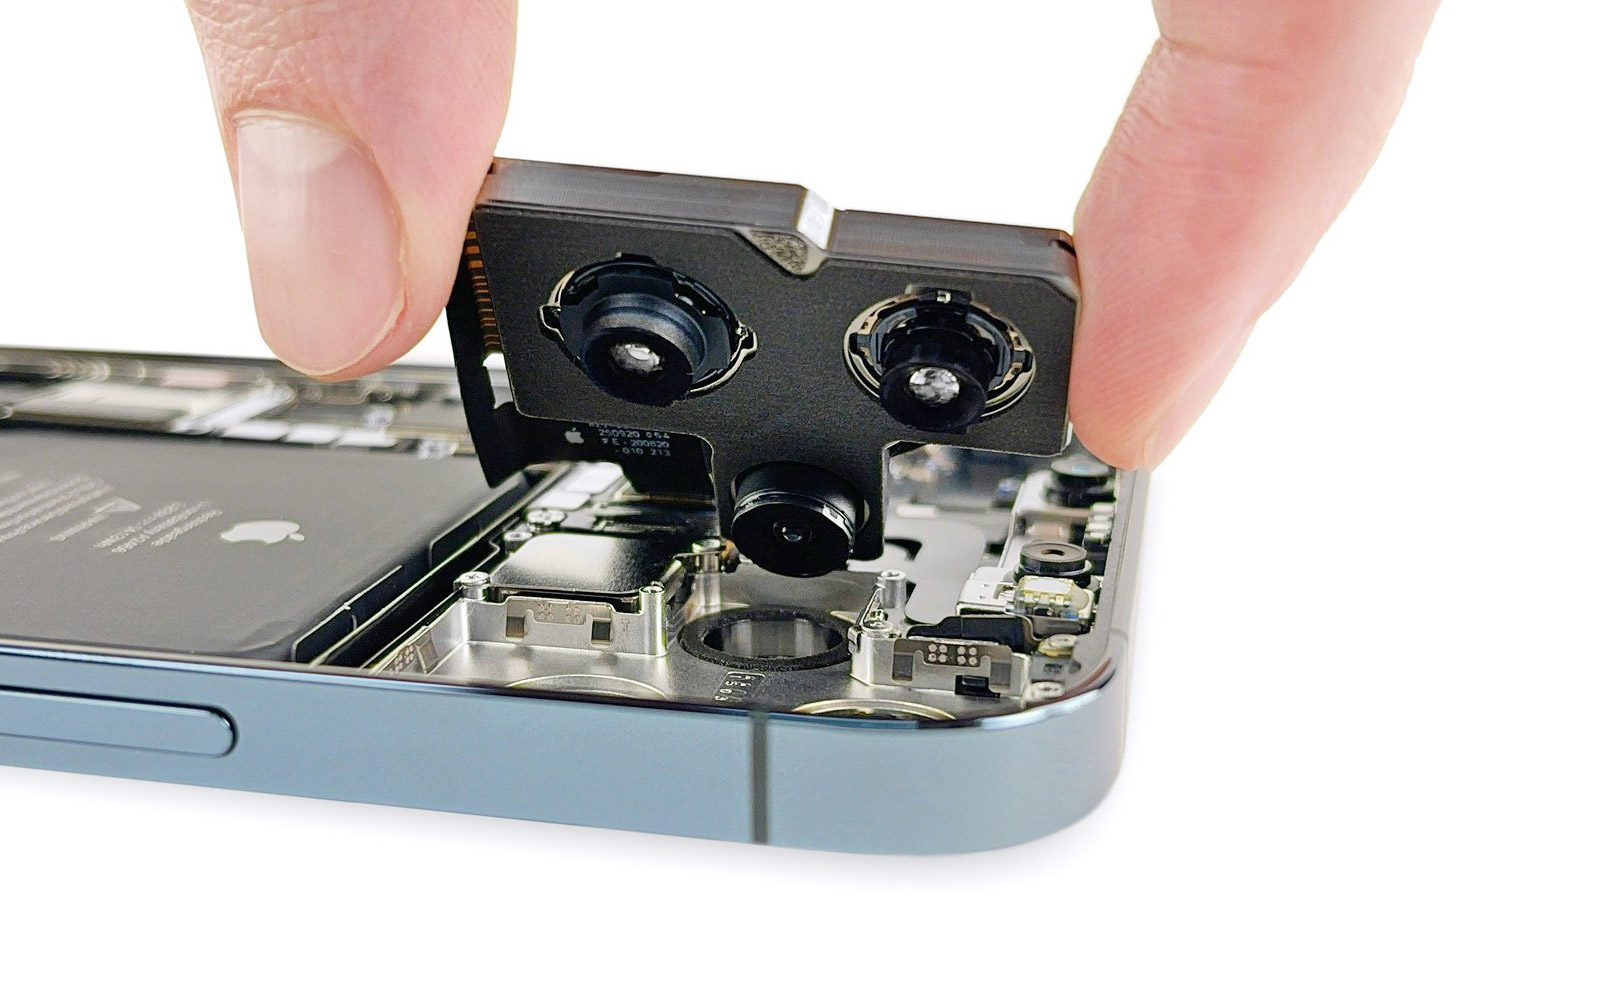 Đây là cụm camera rất to của iPhone 12 Pro Max, cảm biến to hơn cả iPhone 12